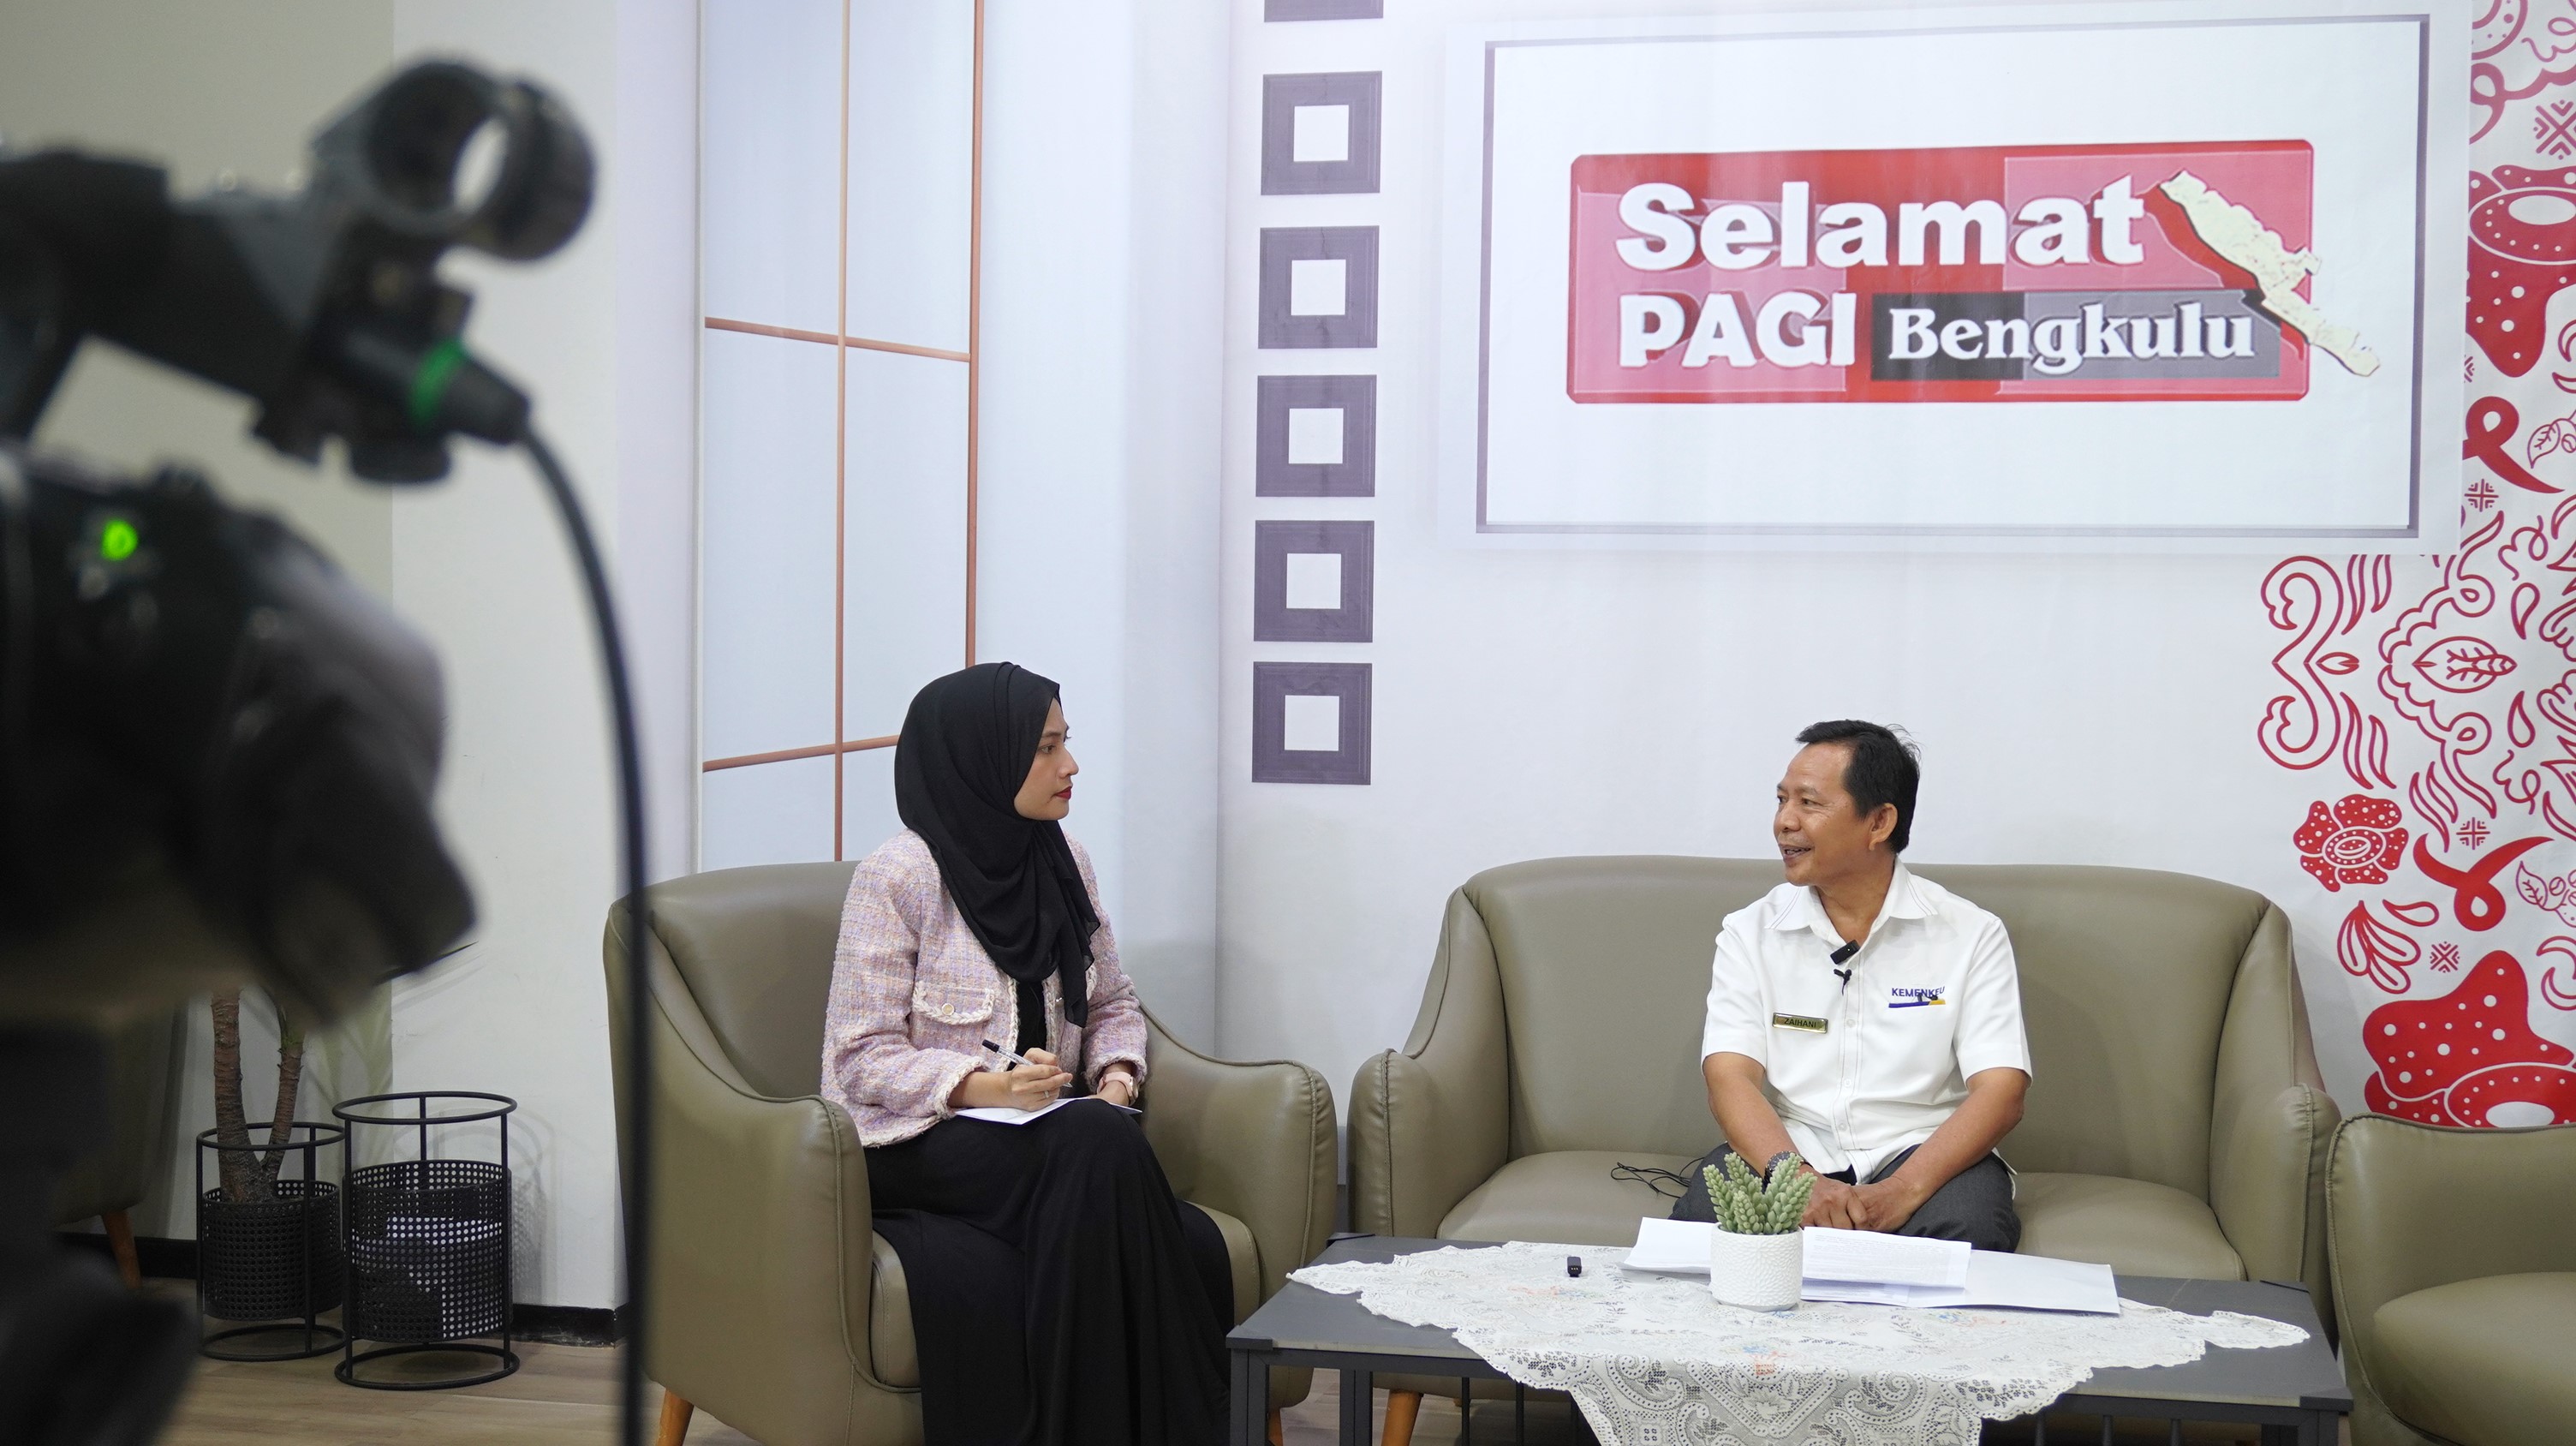 Kolaborasi dengan Rakyat Bengkulu TV, KPKNL Bengkulu Ingatkan Masyarakat untuk Waspada terhadap Modus Penipuan Lelang